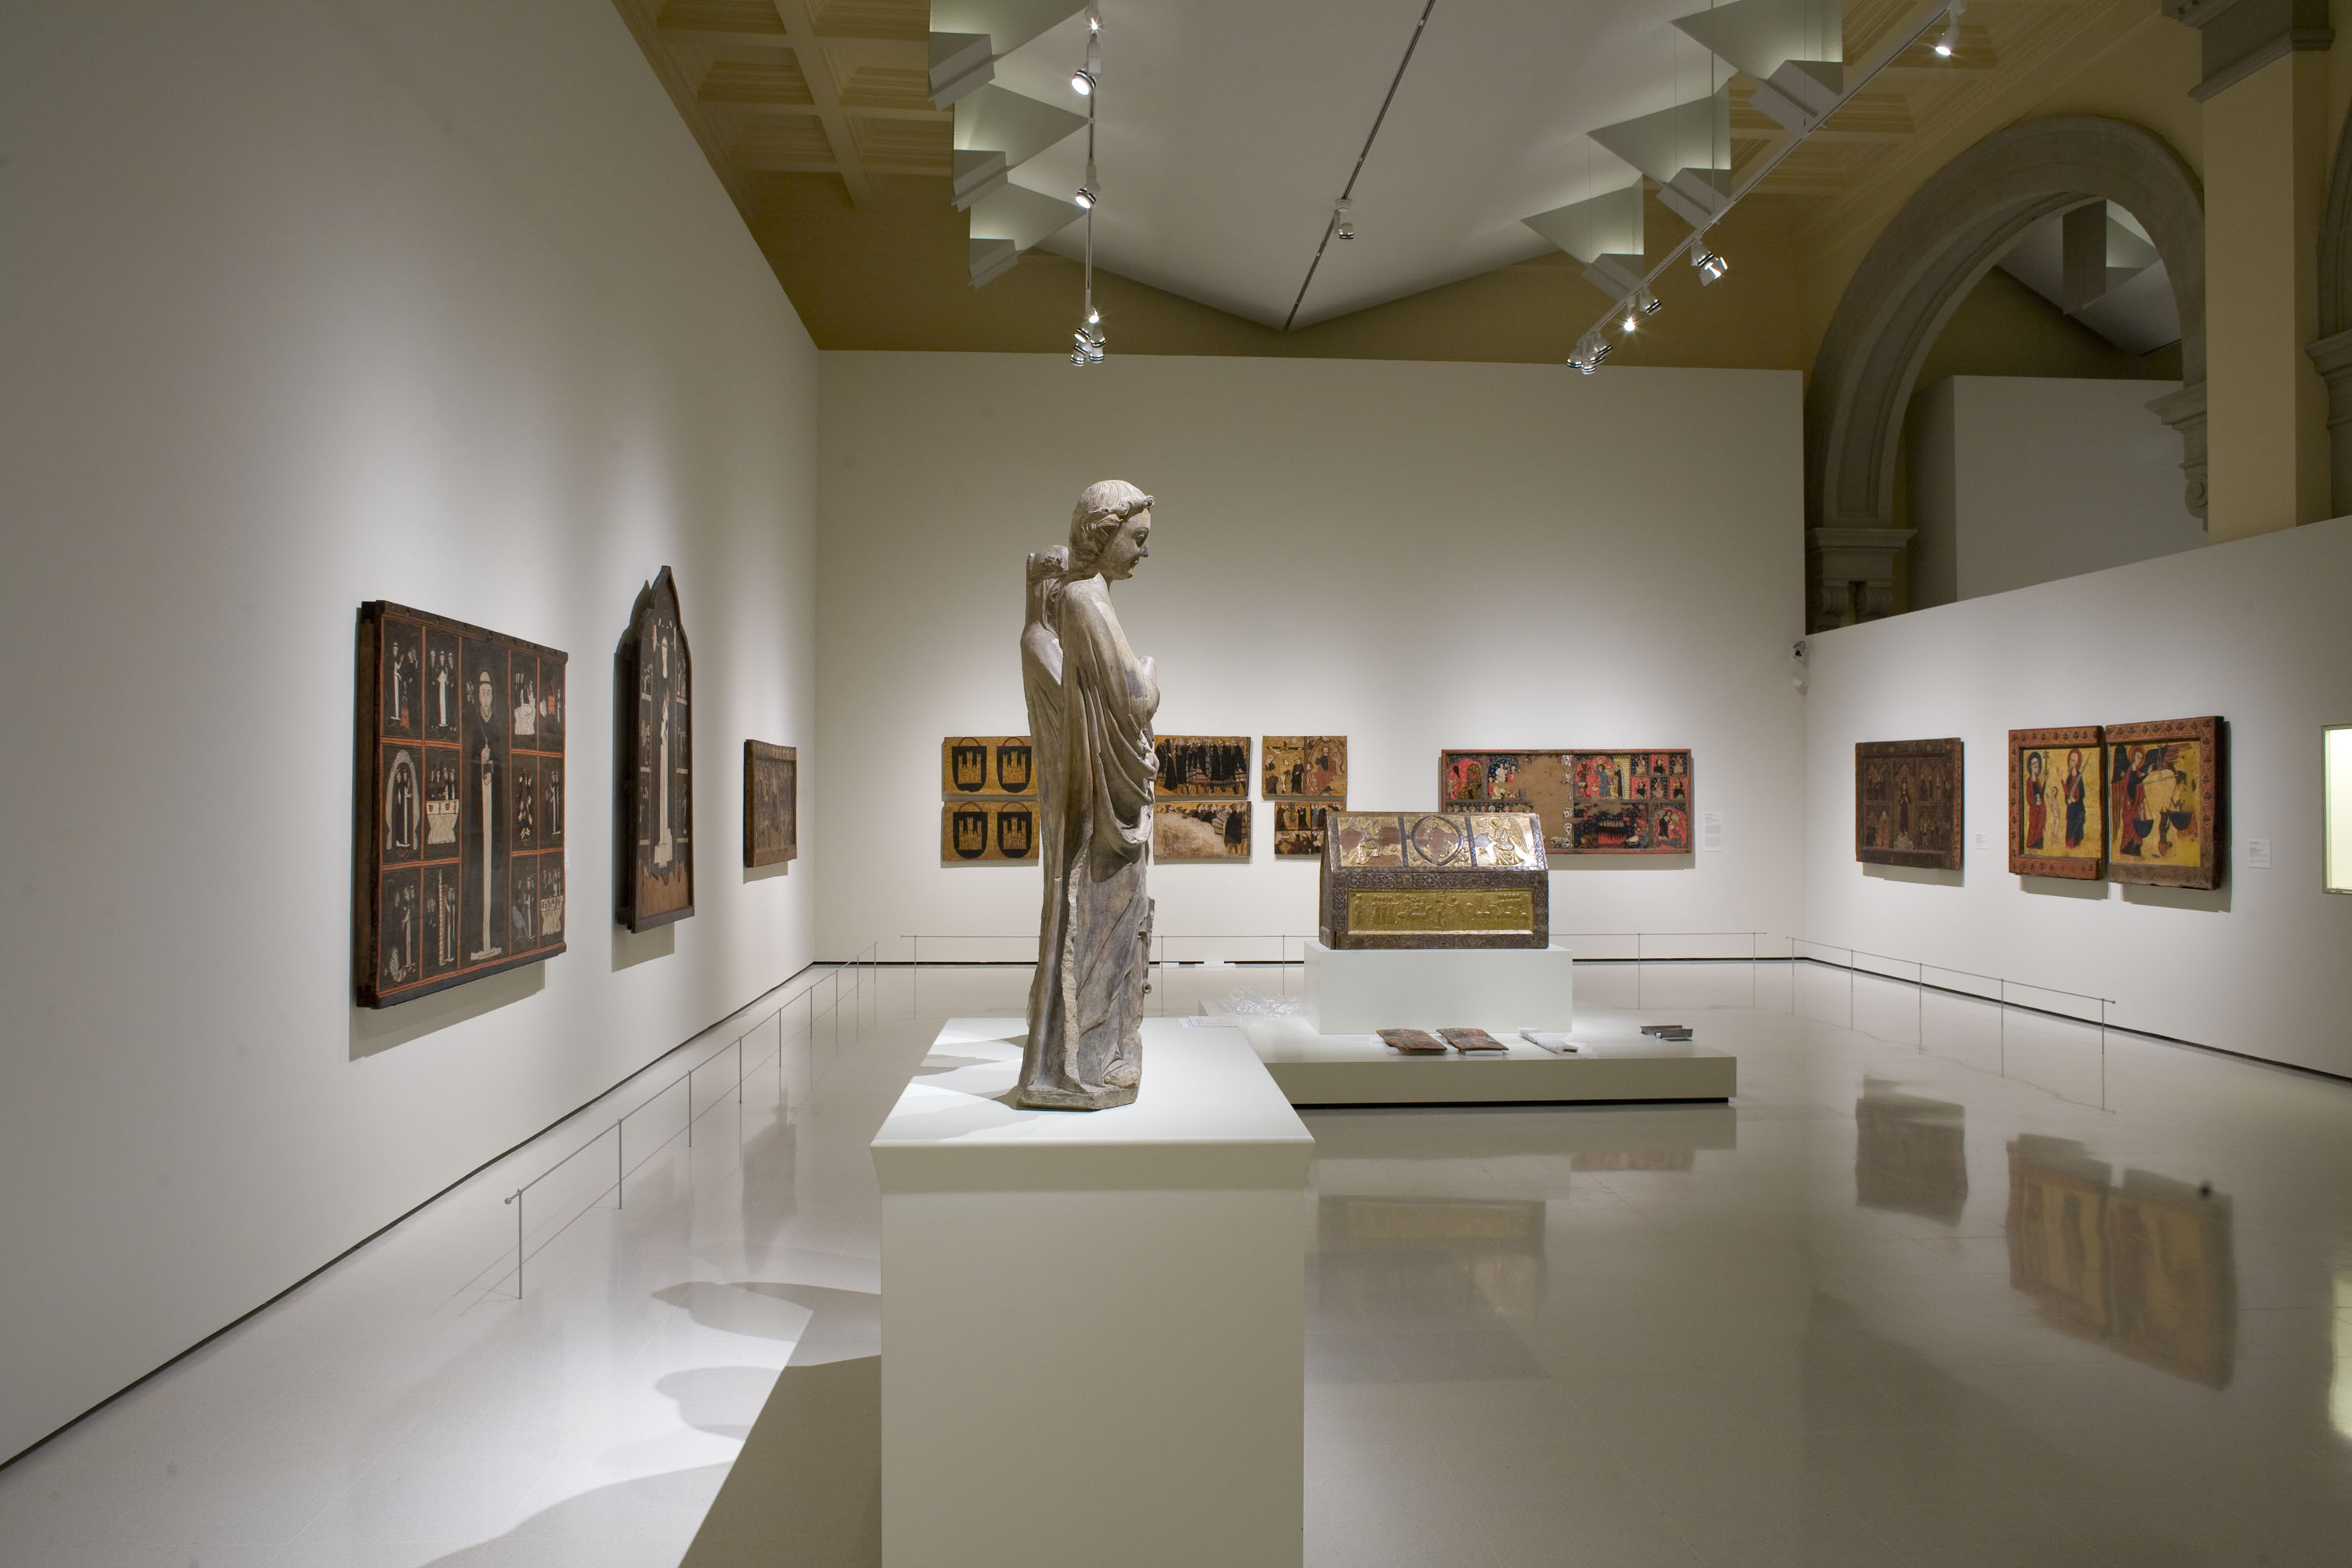 Sales d'art gòtic del Museu Nacional